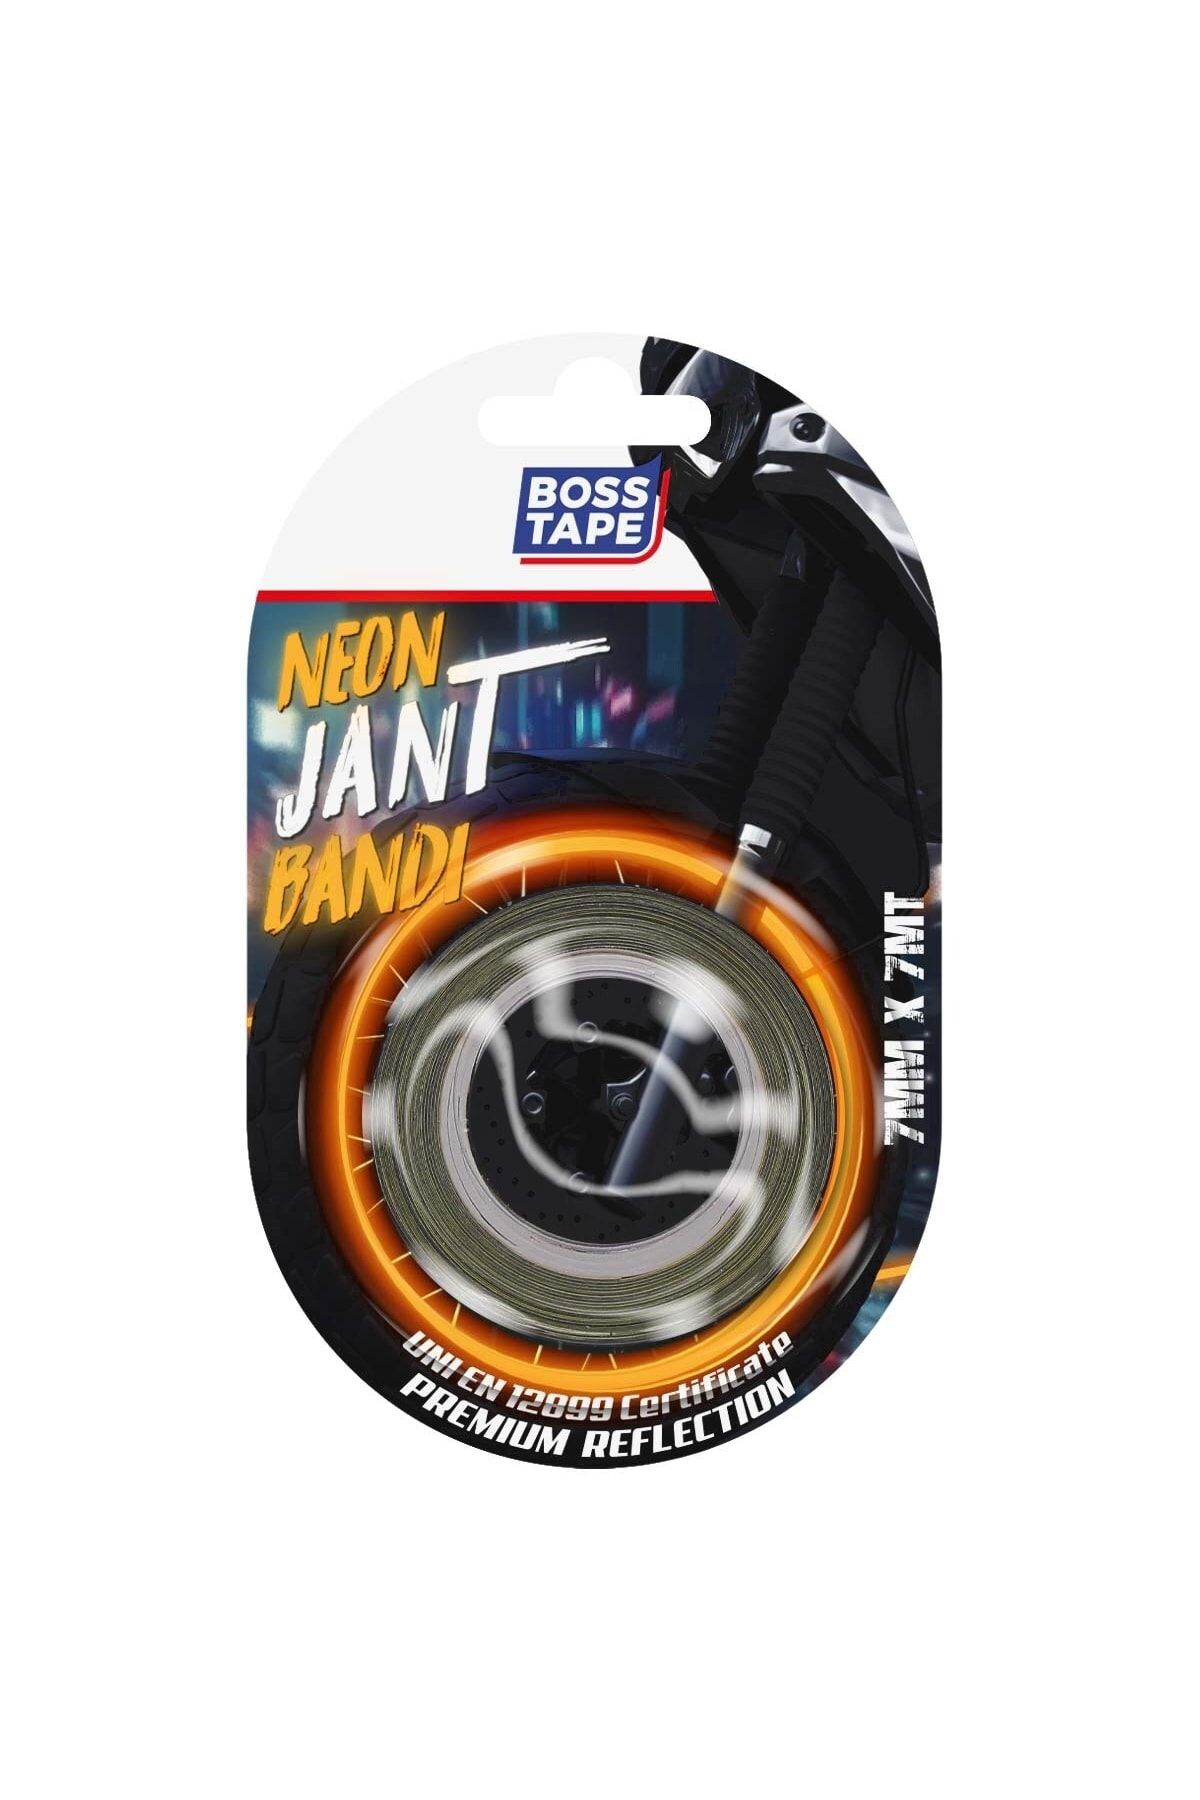 Boss Tape Araç Otomobil Motosiklet Parlayan Reflektörlü Turuncu Neon Jant Bandı Sertifikalı En:7mm Boy:7mt